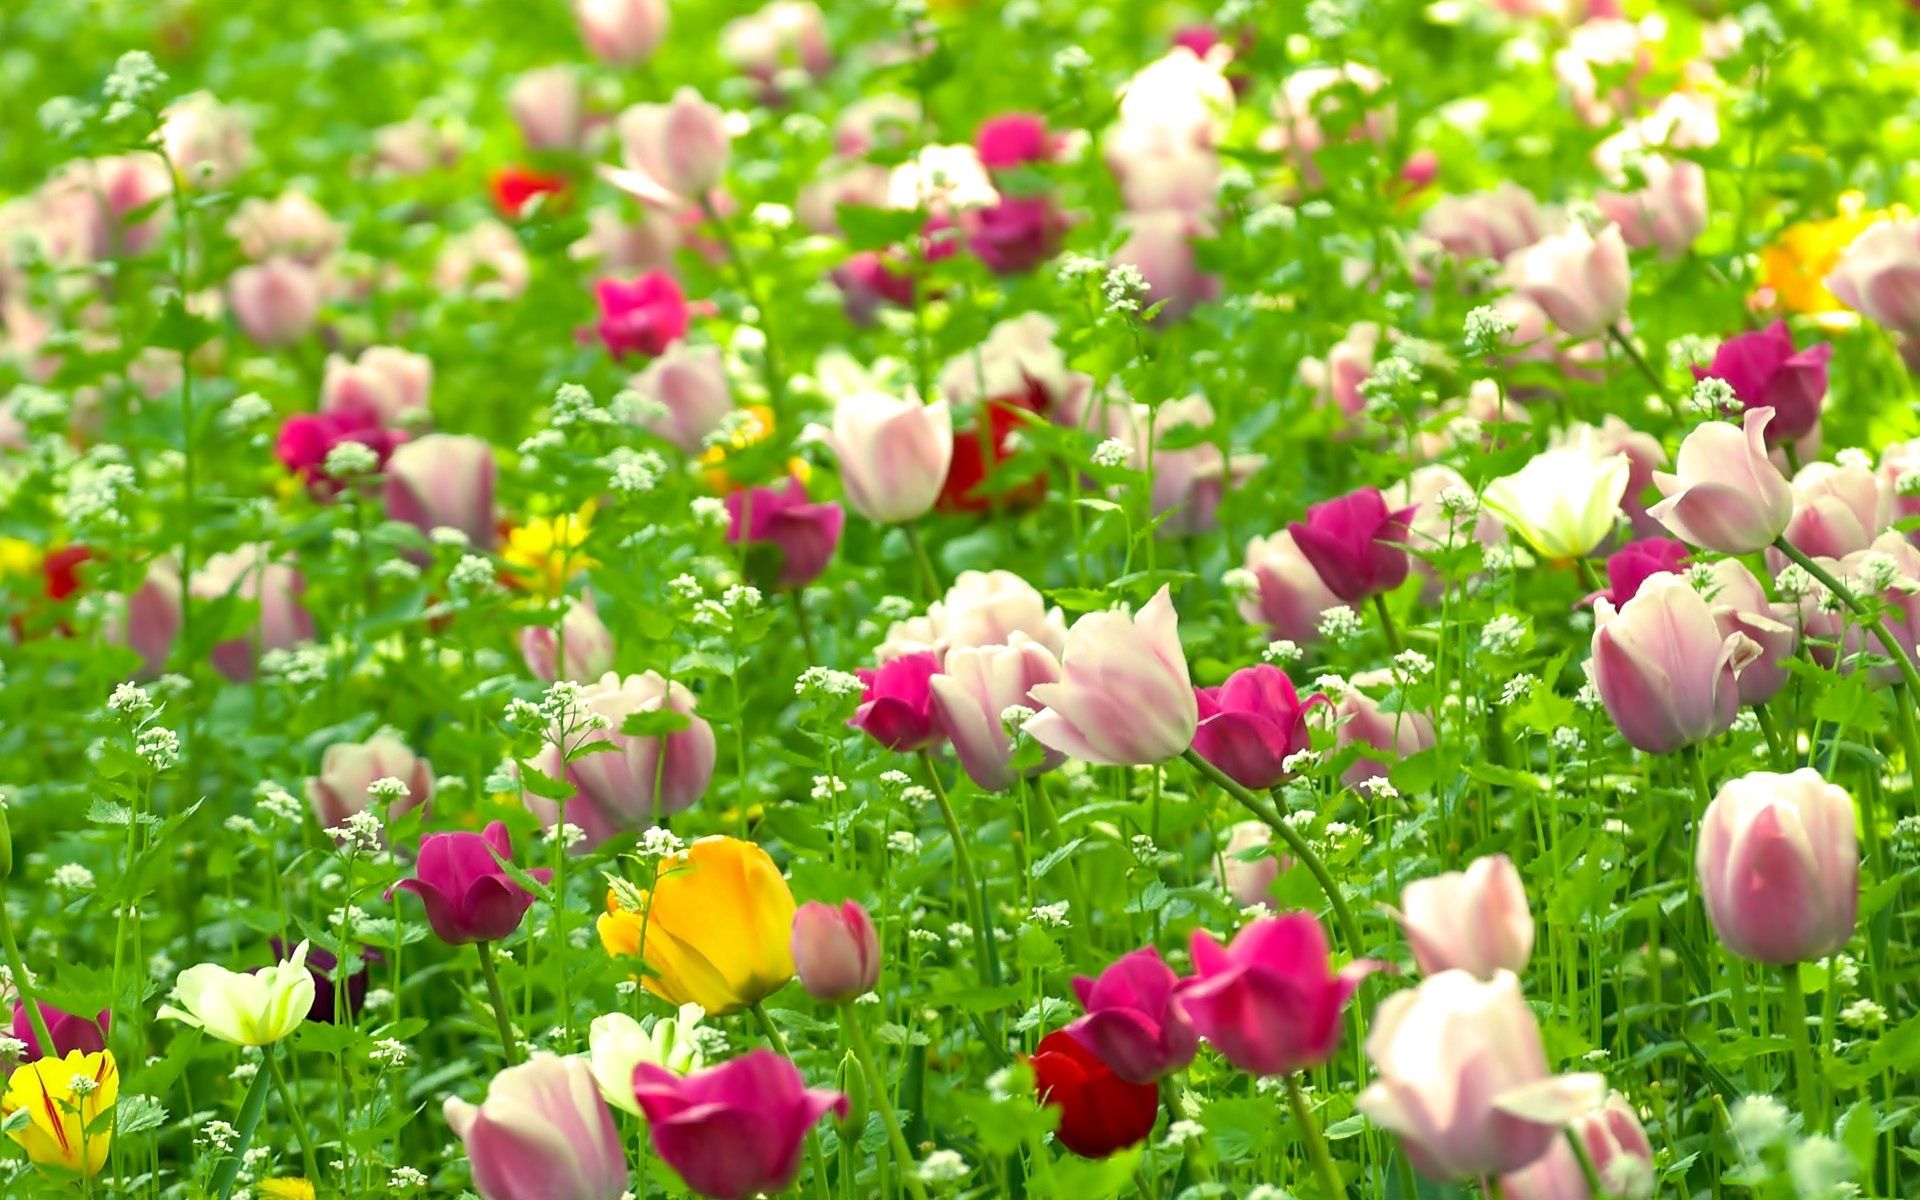 Скачать обои бесплатно Поле, Природа, Тюльпаны, Лето, Цветы картинка на рабочий стол ПК